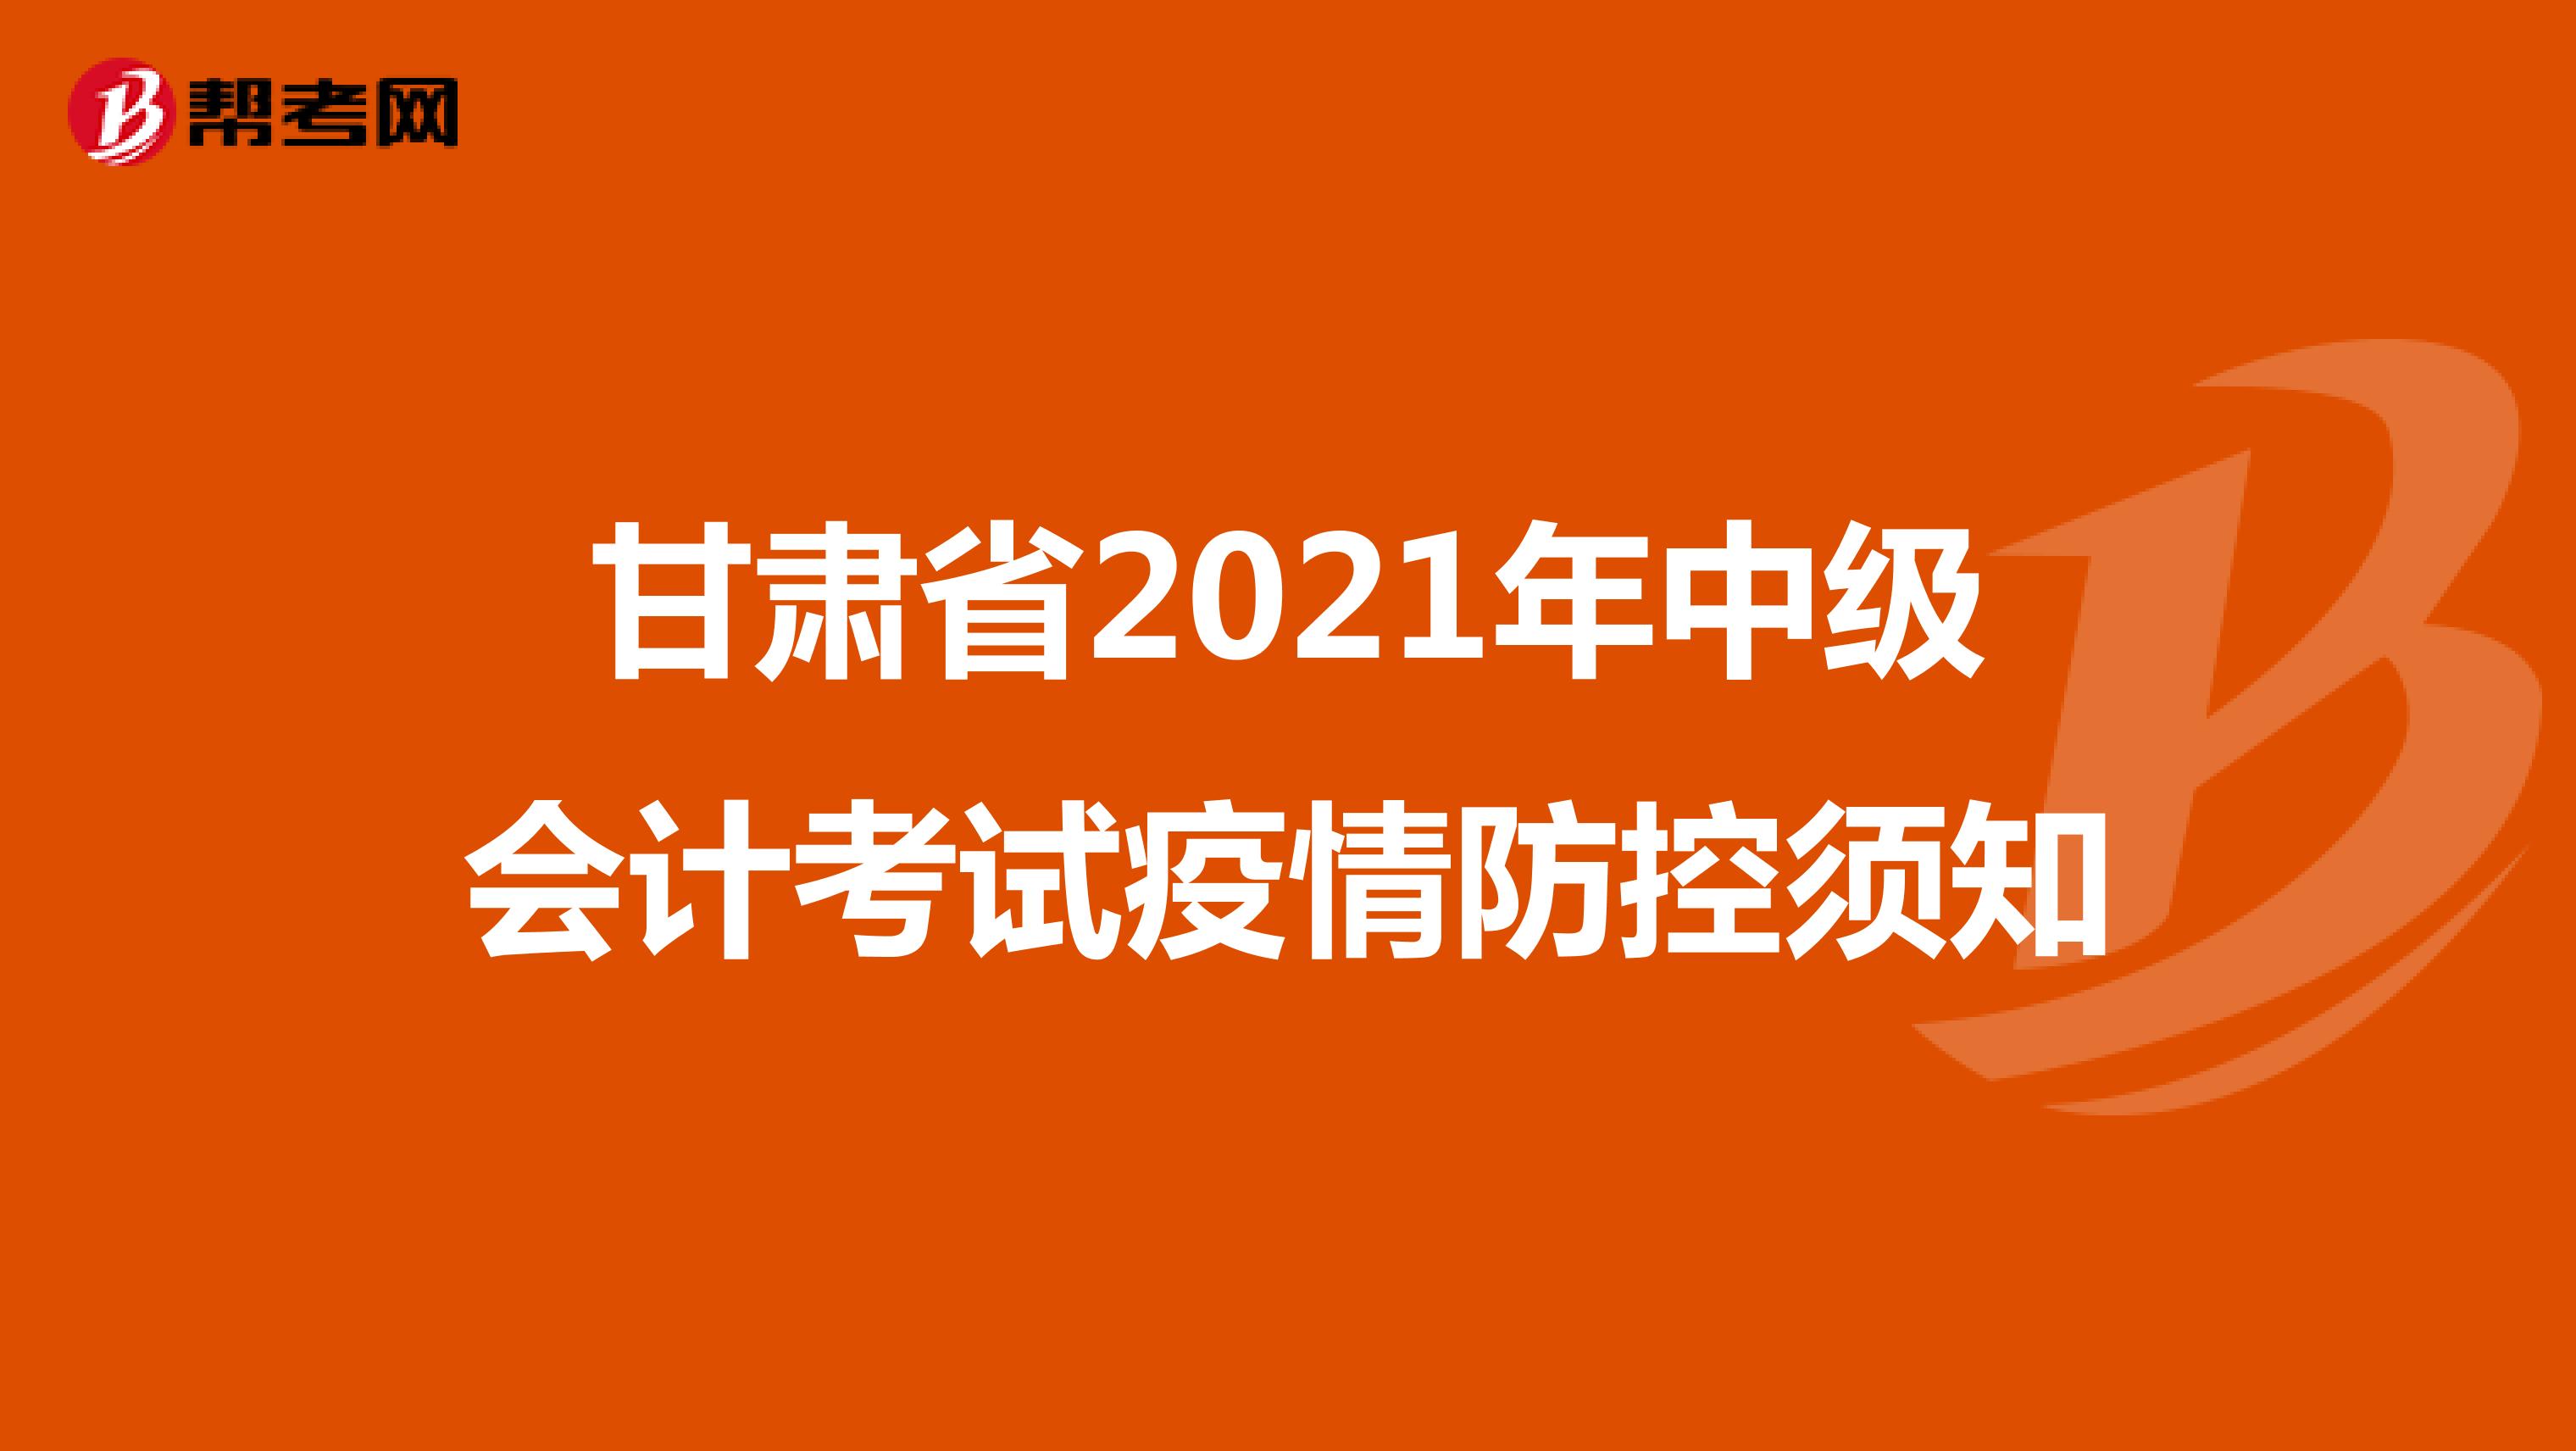 甘肃省2021年中级会计考试疫情防控须知